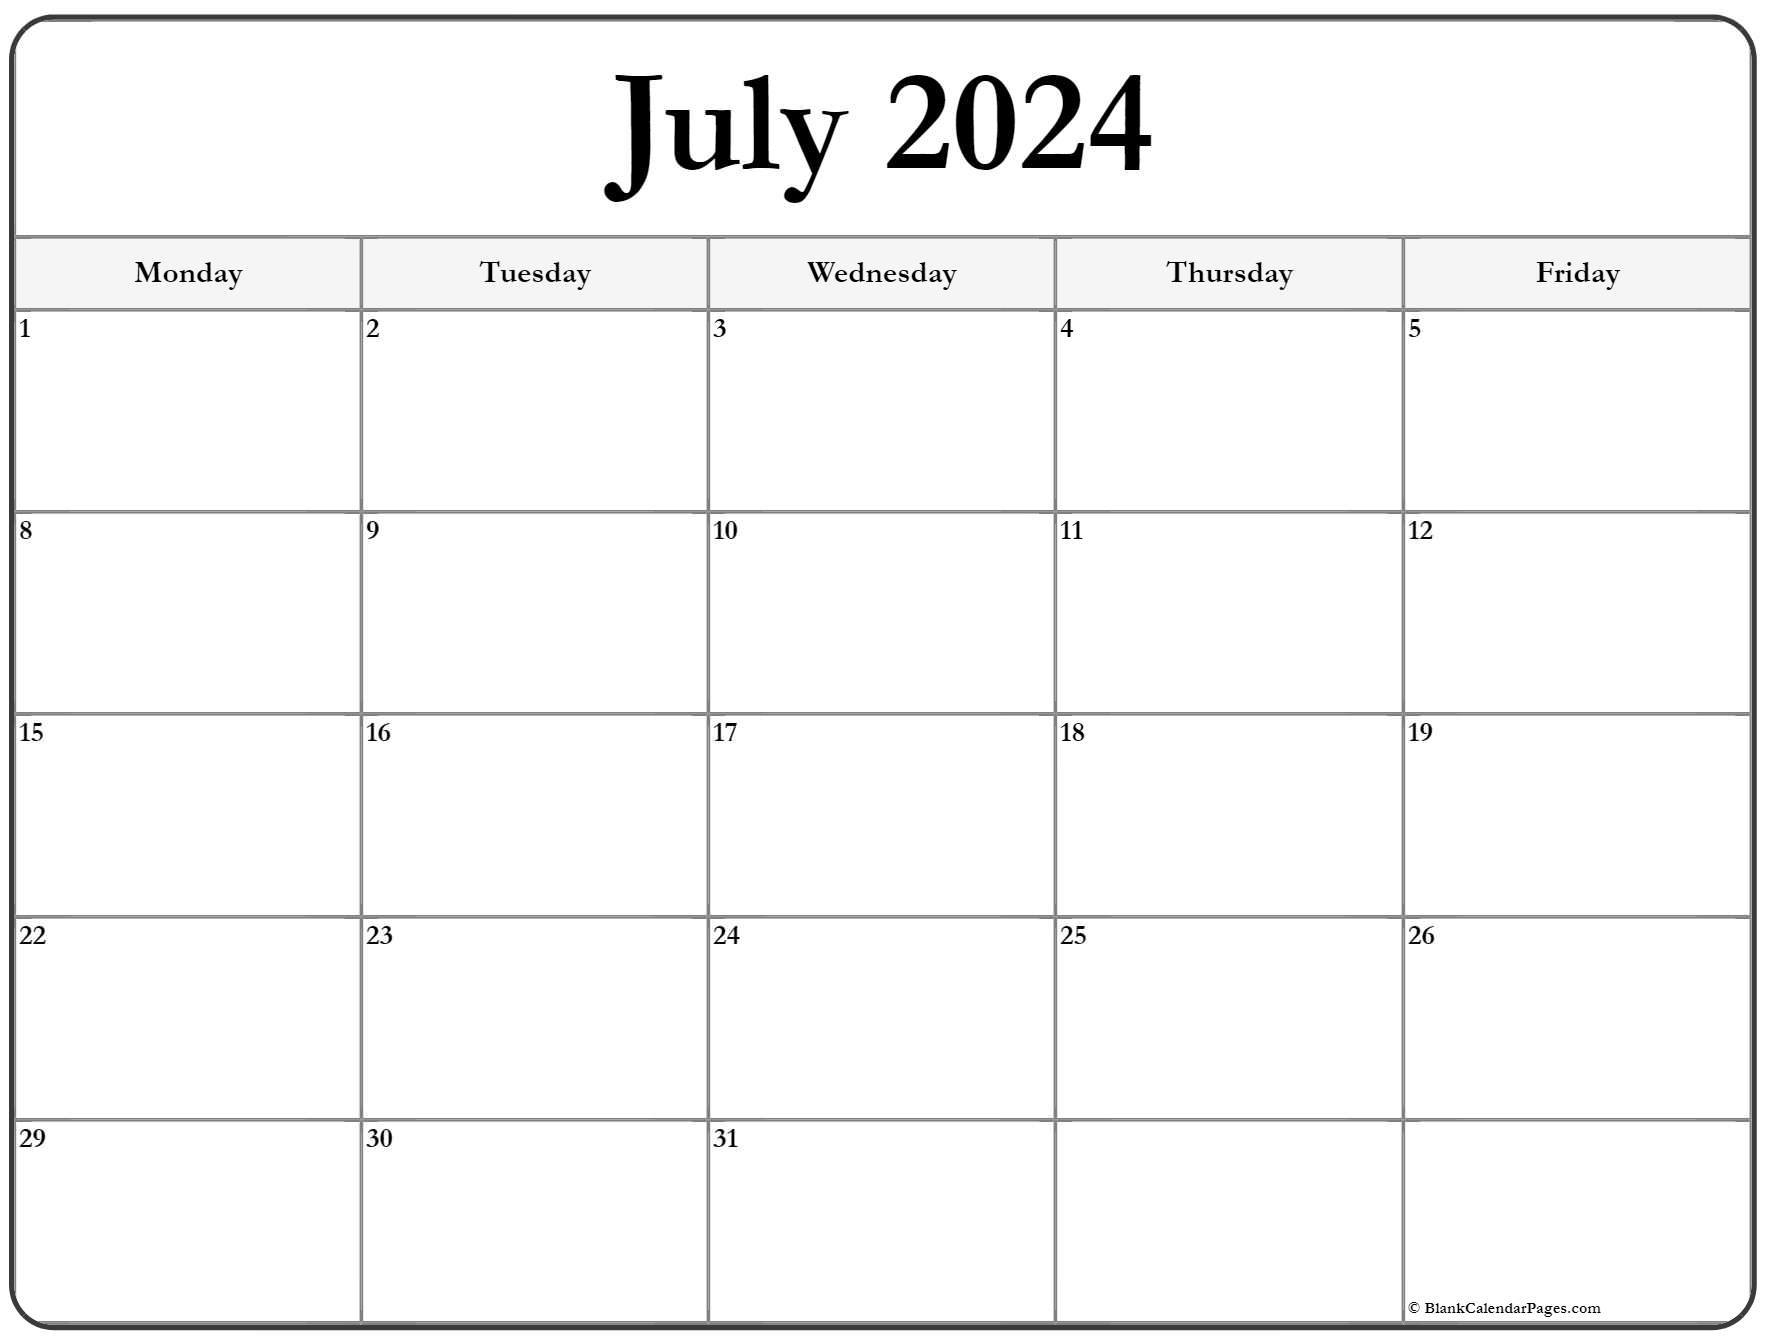 July 2024 Monday Calendar | Monday To Sunday intended for July 2024 Calendar Monday Start